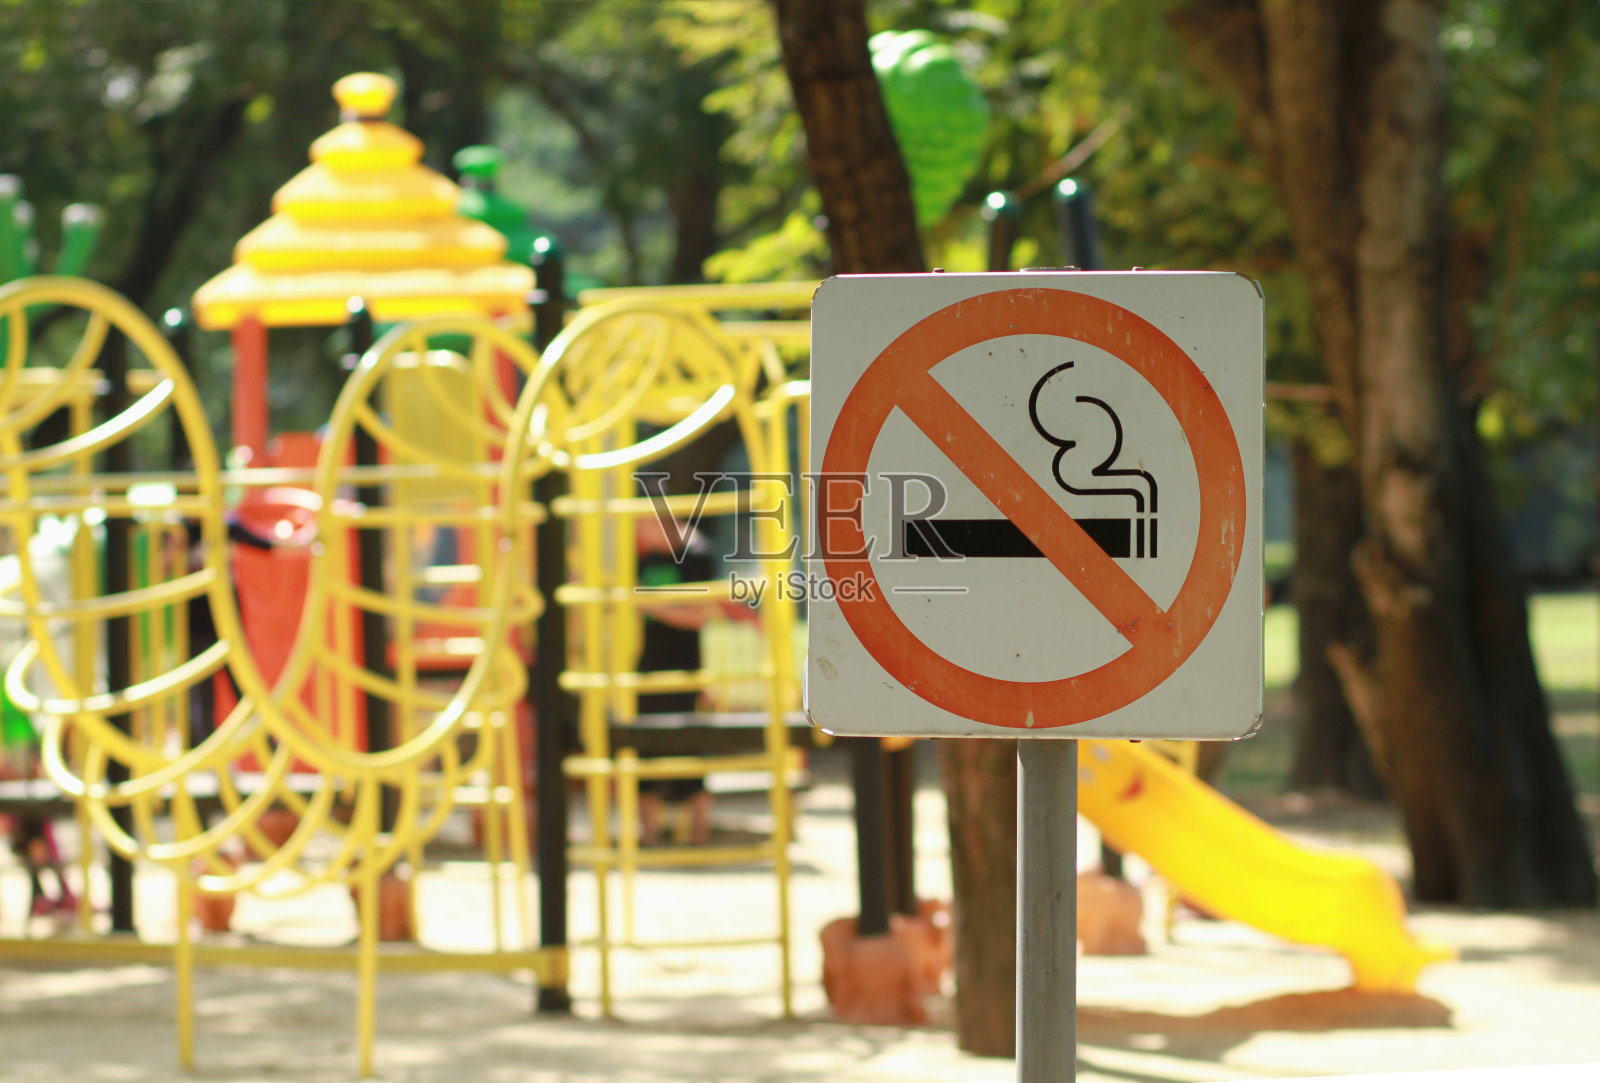 公园儿童游乐场附近有禁烟标志照片摄影图片